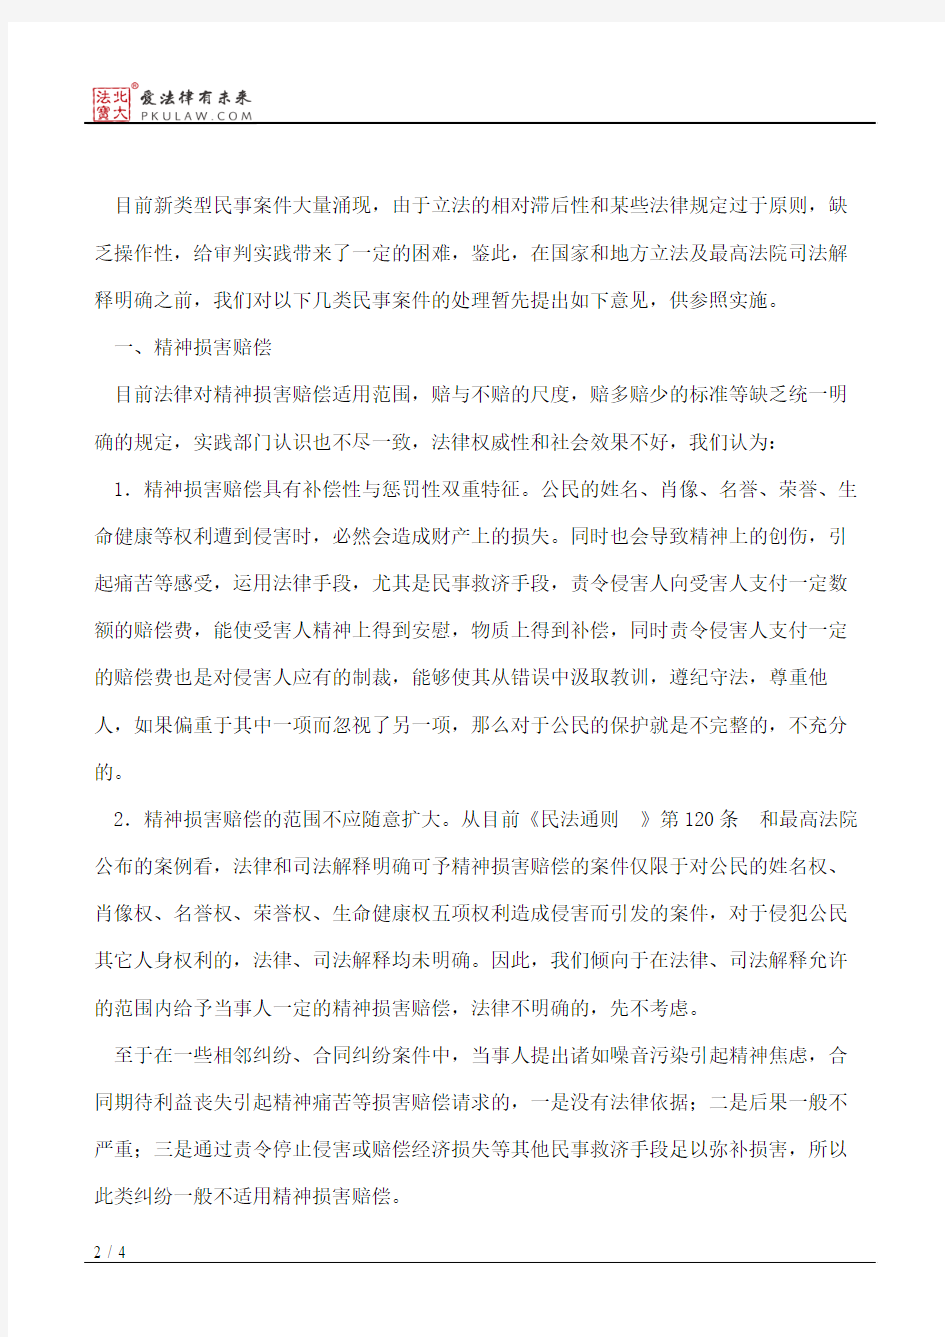 上海市高级人民法院关于印发《几类民事案件的处理意见》的通知